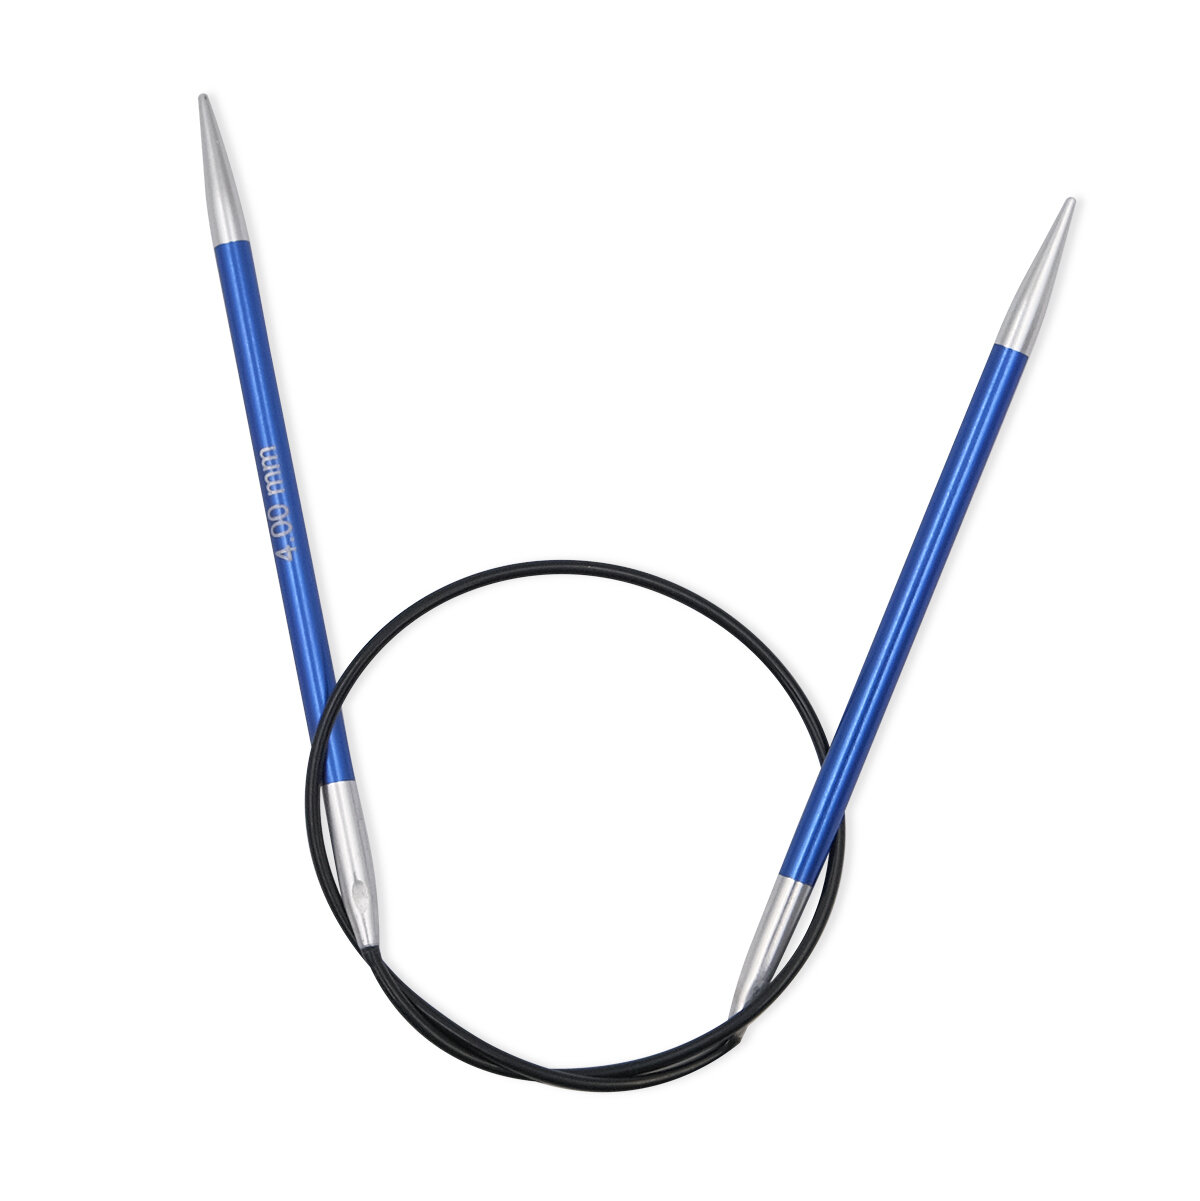 Спицы круговые укороченные Zing 4 мм/40 см, алюминий, сапфир (темно-синий), KnitPro